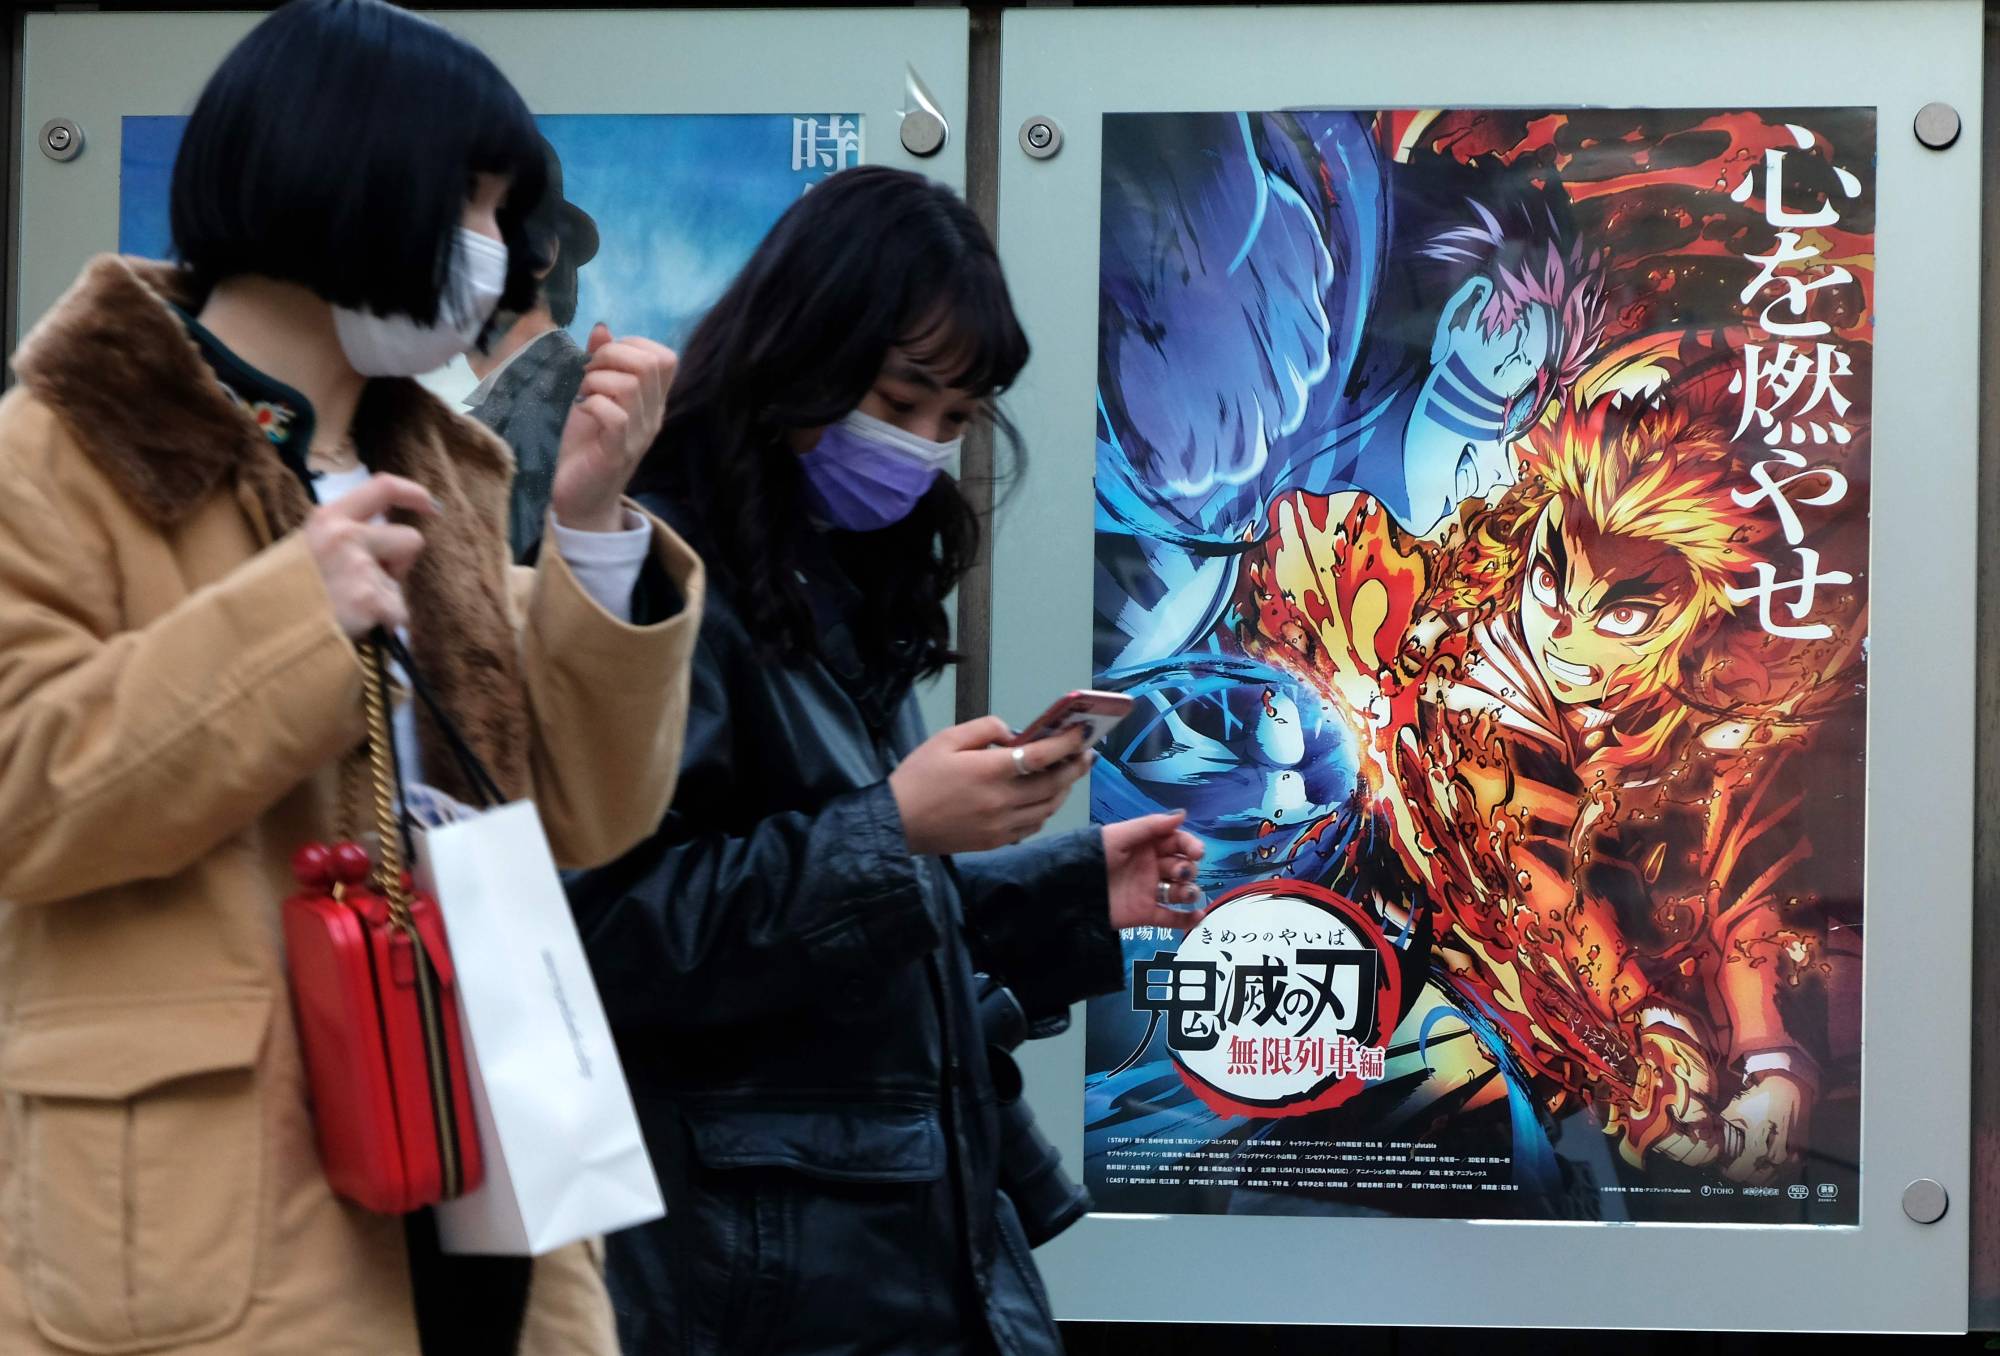 Demon Slayer: Kimetsu no Yaiba the Movie: Mugen Train (2020)